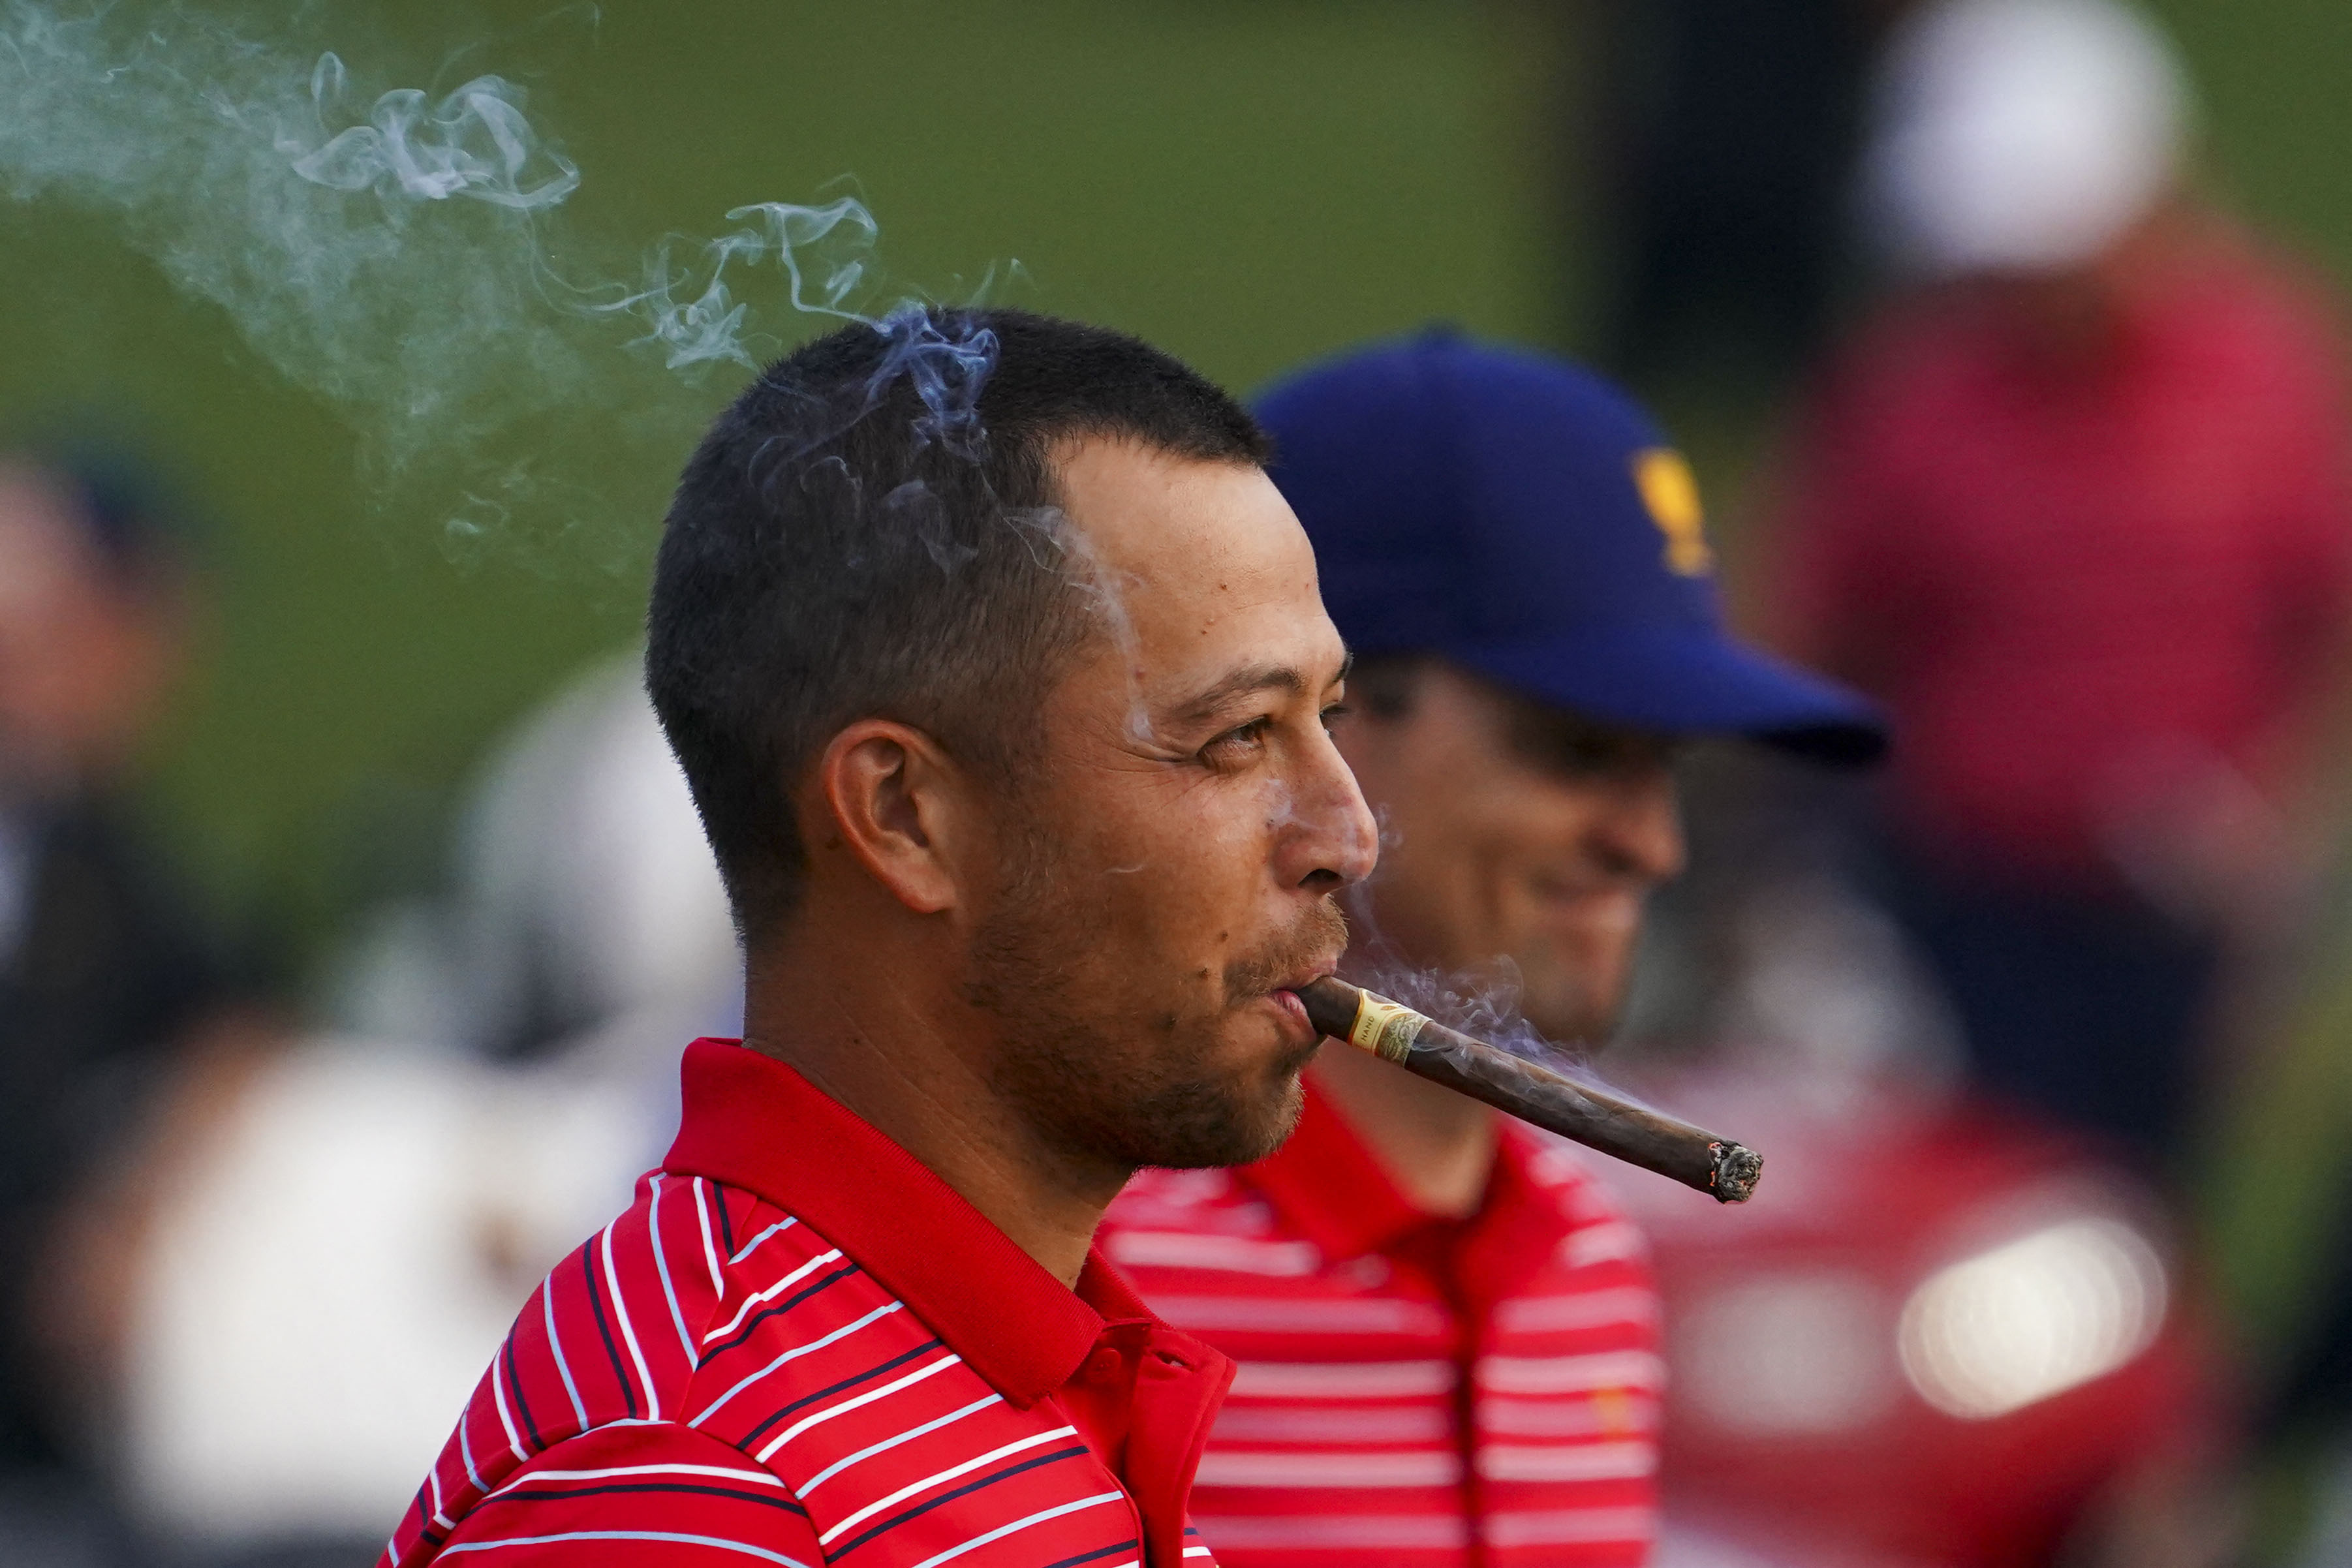 El golfista estaounidense Xander Schauffele fuma un cigarro en la última jornada del torneo que consagró a su equipo